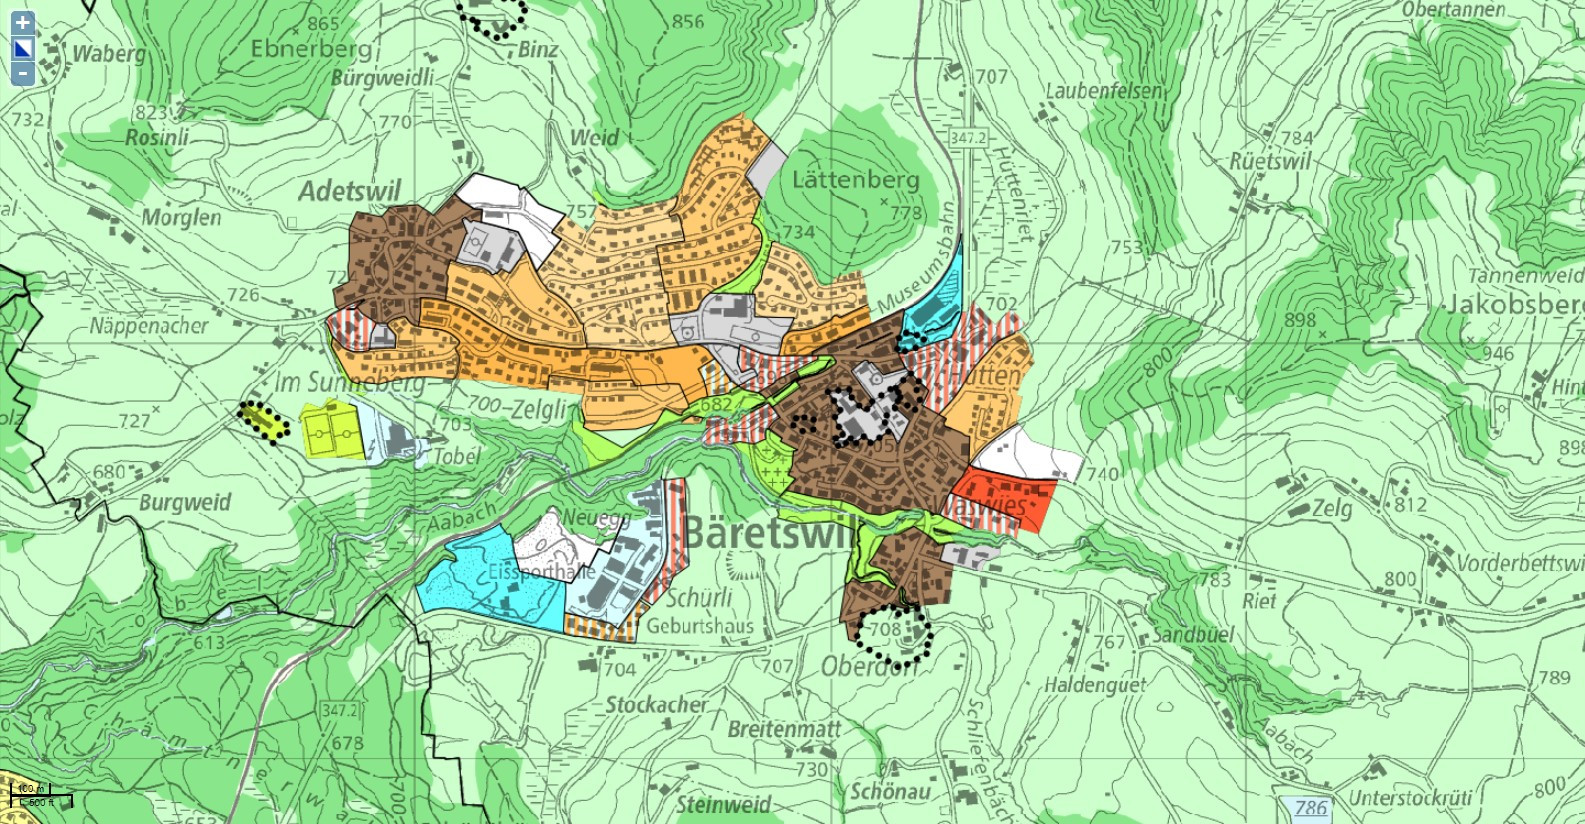 Zonenplan 1993 GIS-Browser 2021 1:10'000